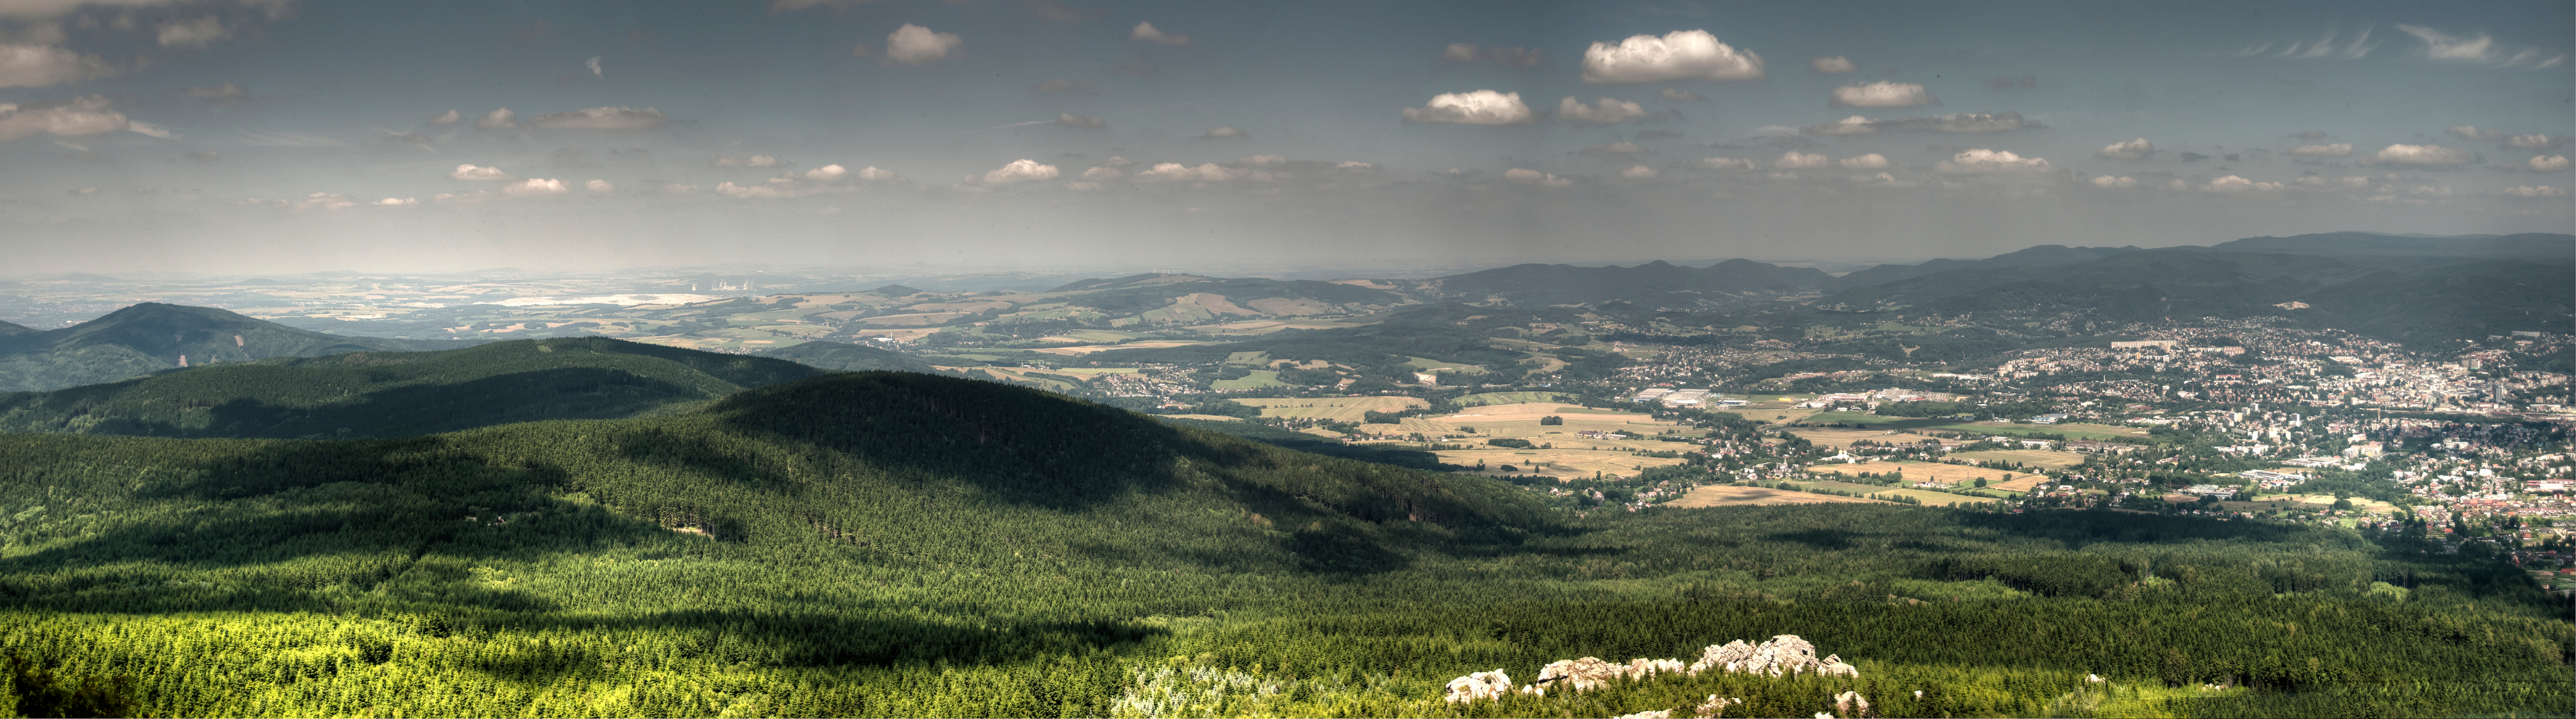 Panorama z Ještědu - výhled na Liberec a okolí směrem k Polským hranicím